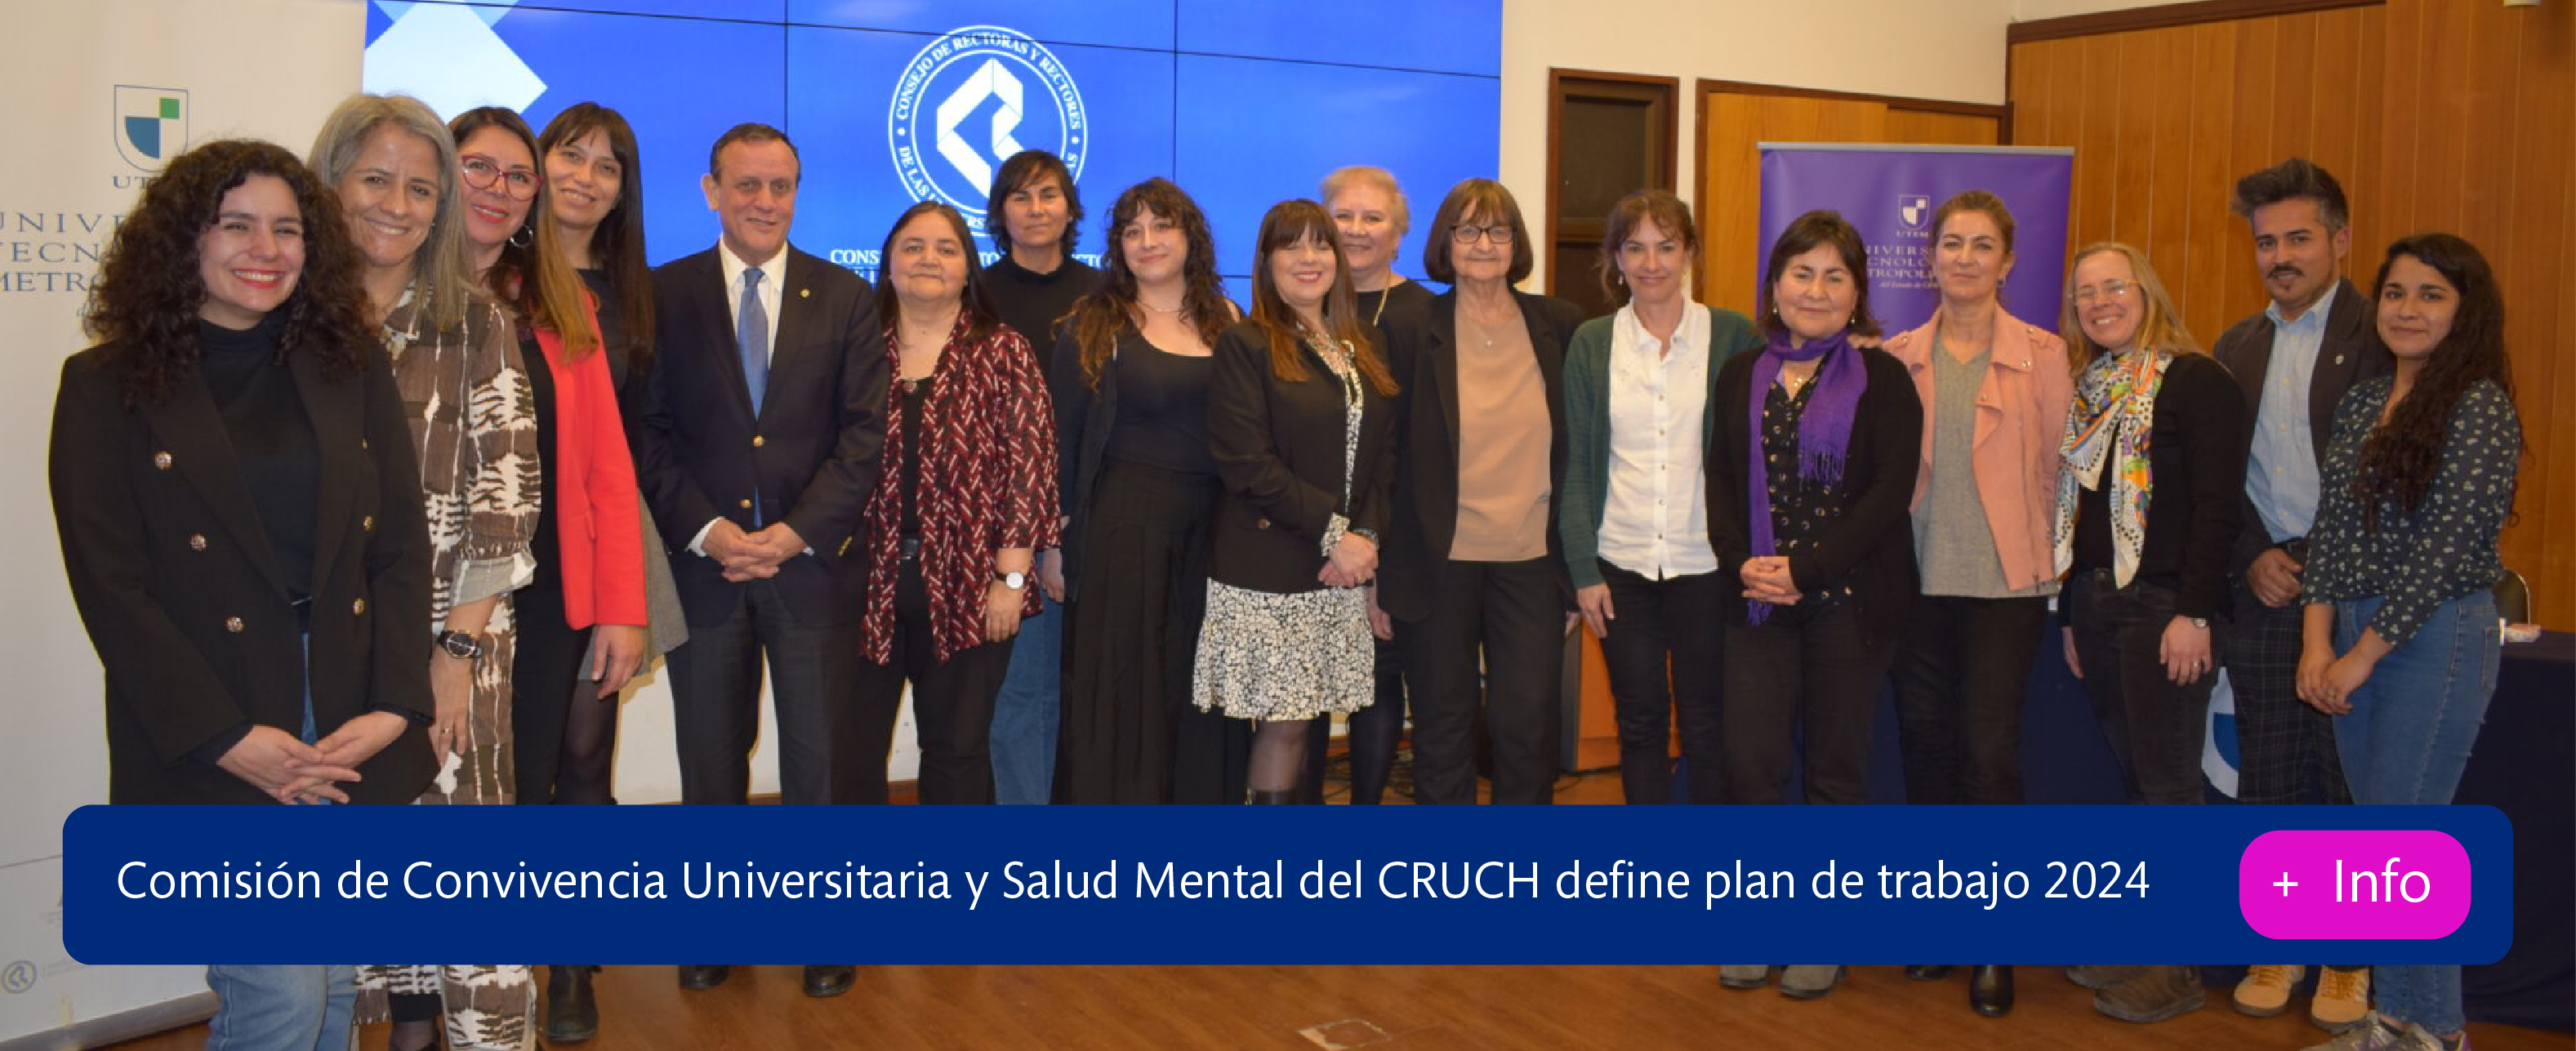 Comisión de Convivencia Universitaria y Salud Mental del CRUCH define plan de trabajo 2024